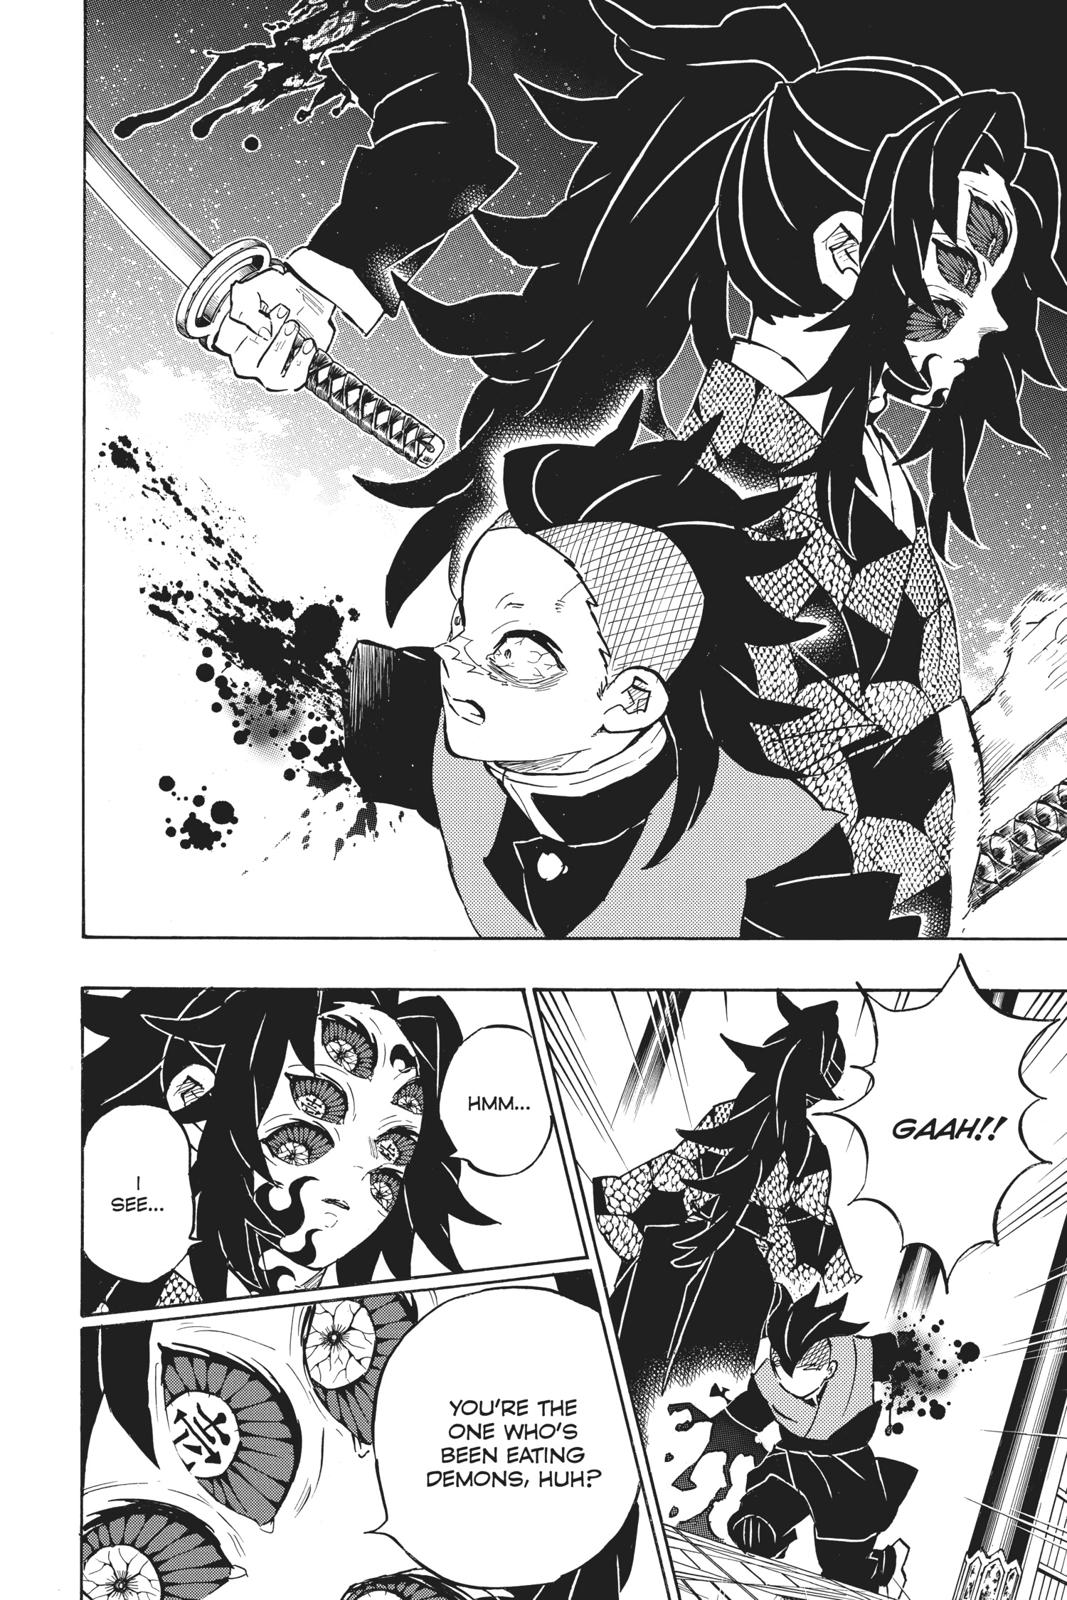 Demon Slayer Manga Manga Chapter - 166 - image 5